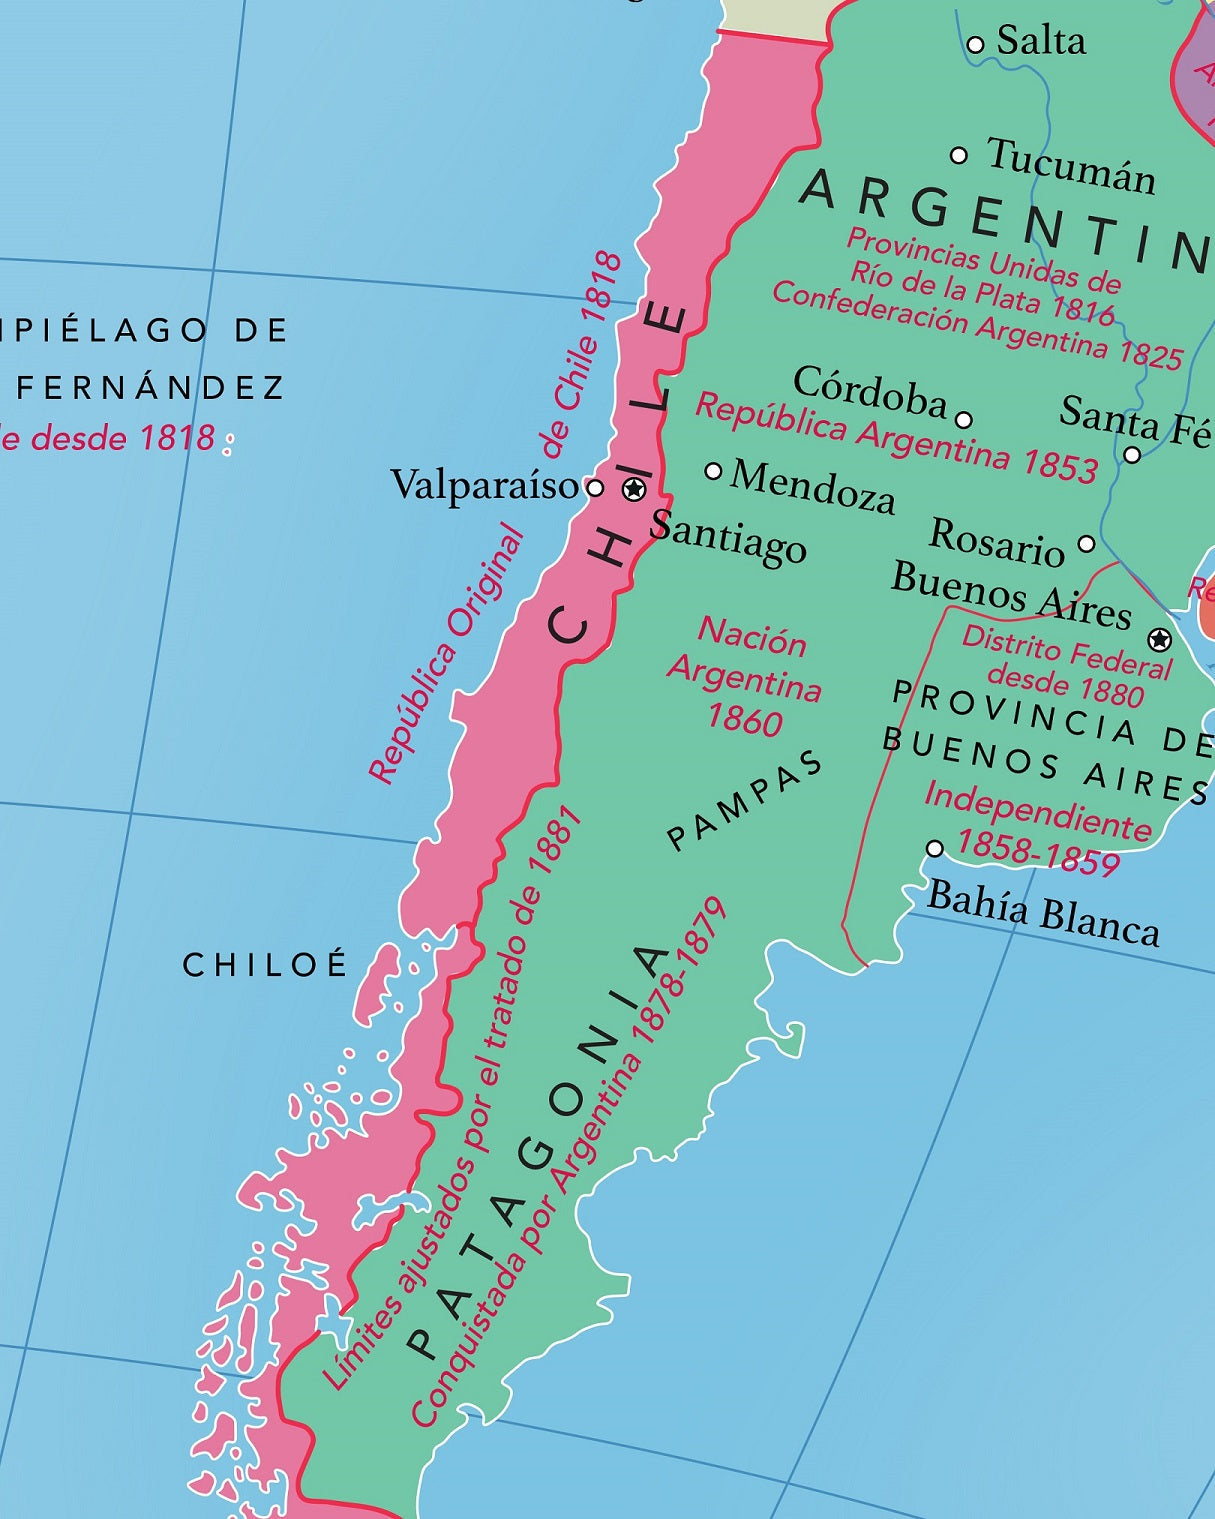 Mapa de Latinoamérica e Independencias - Lámina